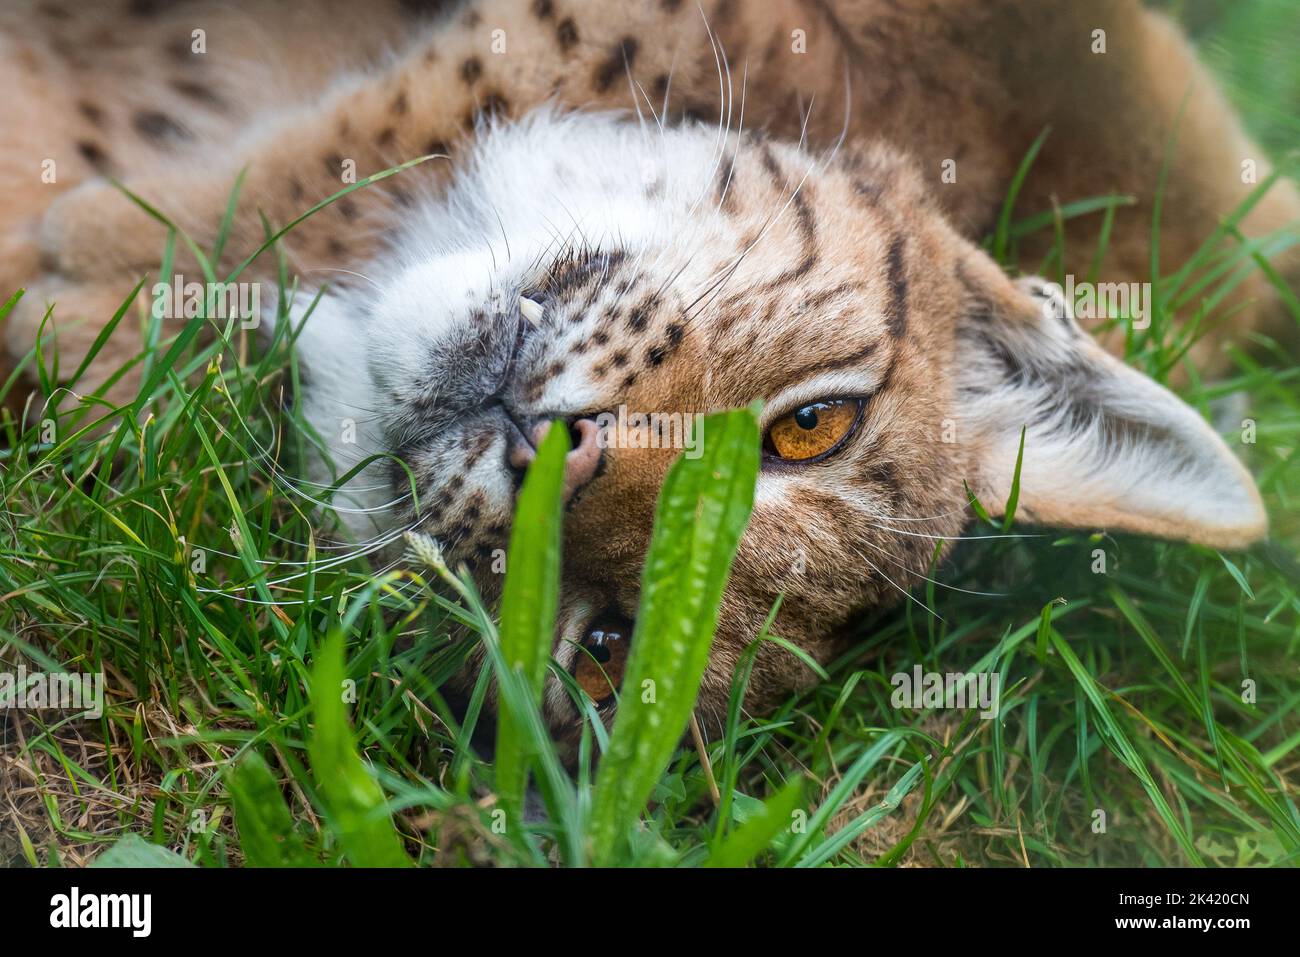 Lynx kitten Stock Photo